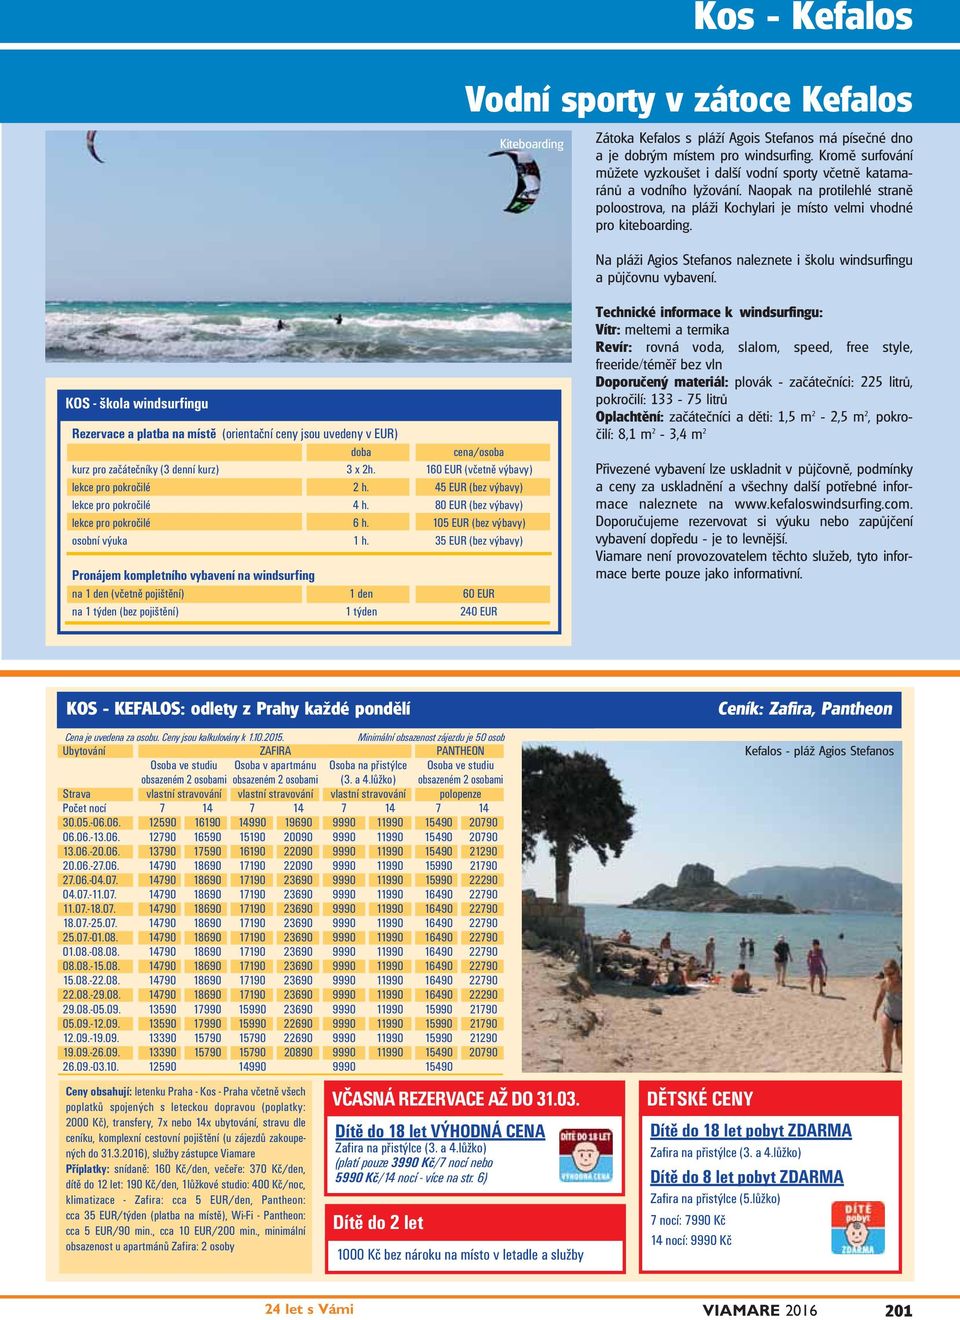 Na pláži Agios Stefanos naleznete i školu windsurfingu a půjčovnu vybavení.